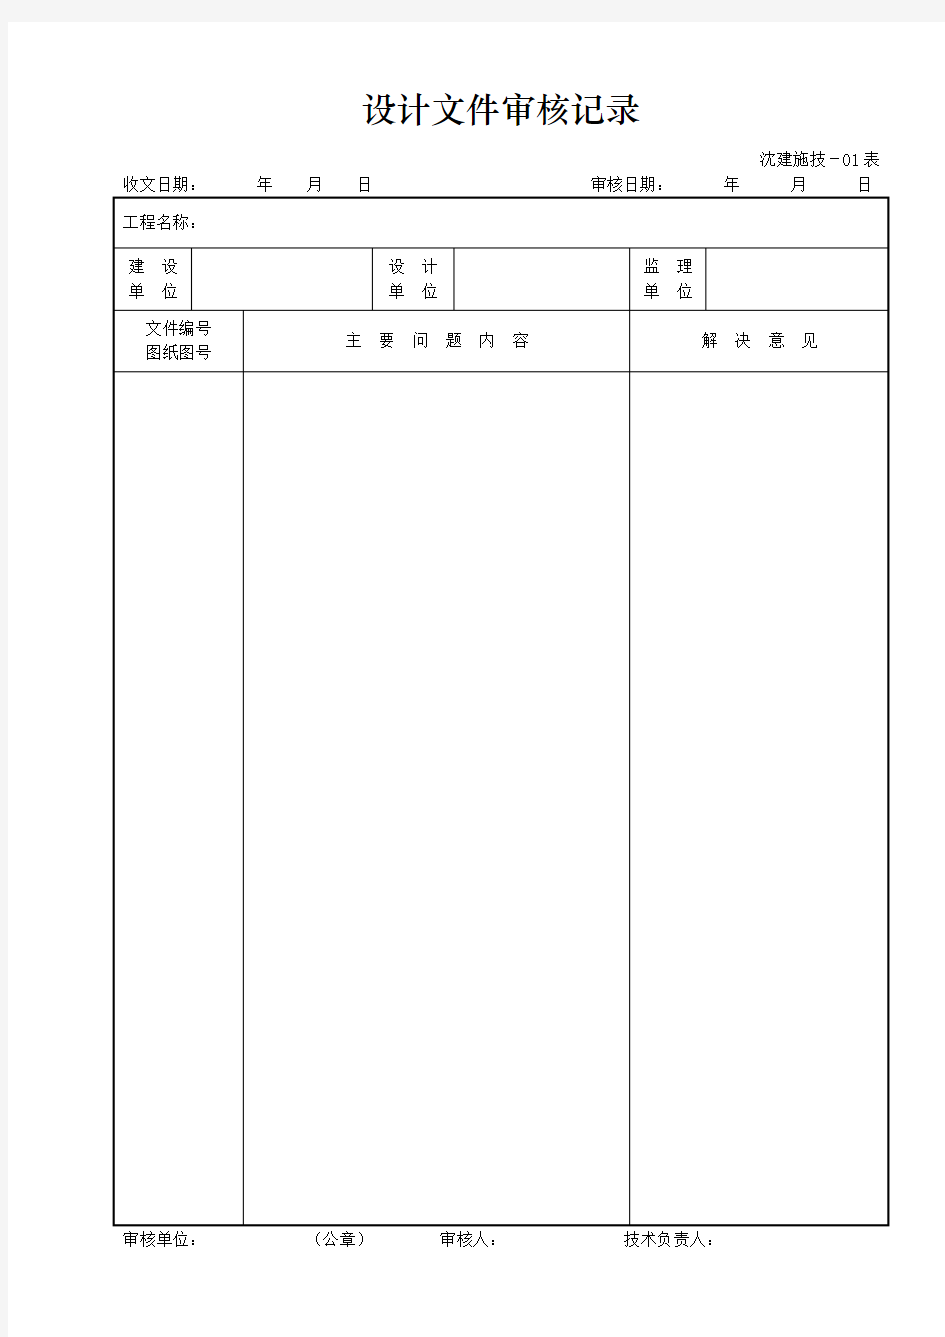 沈阳铁路局建设项目施工用表